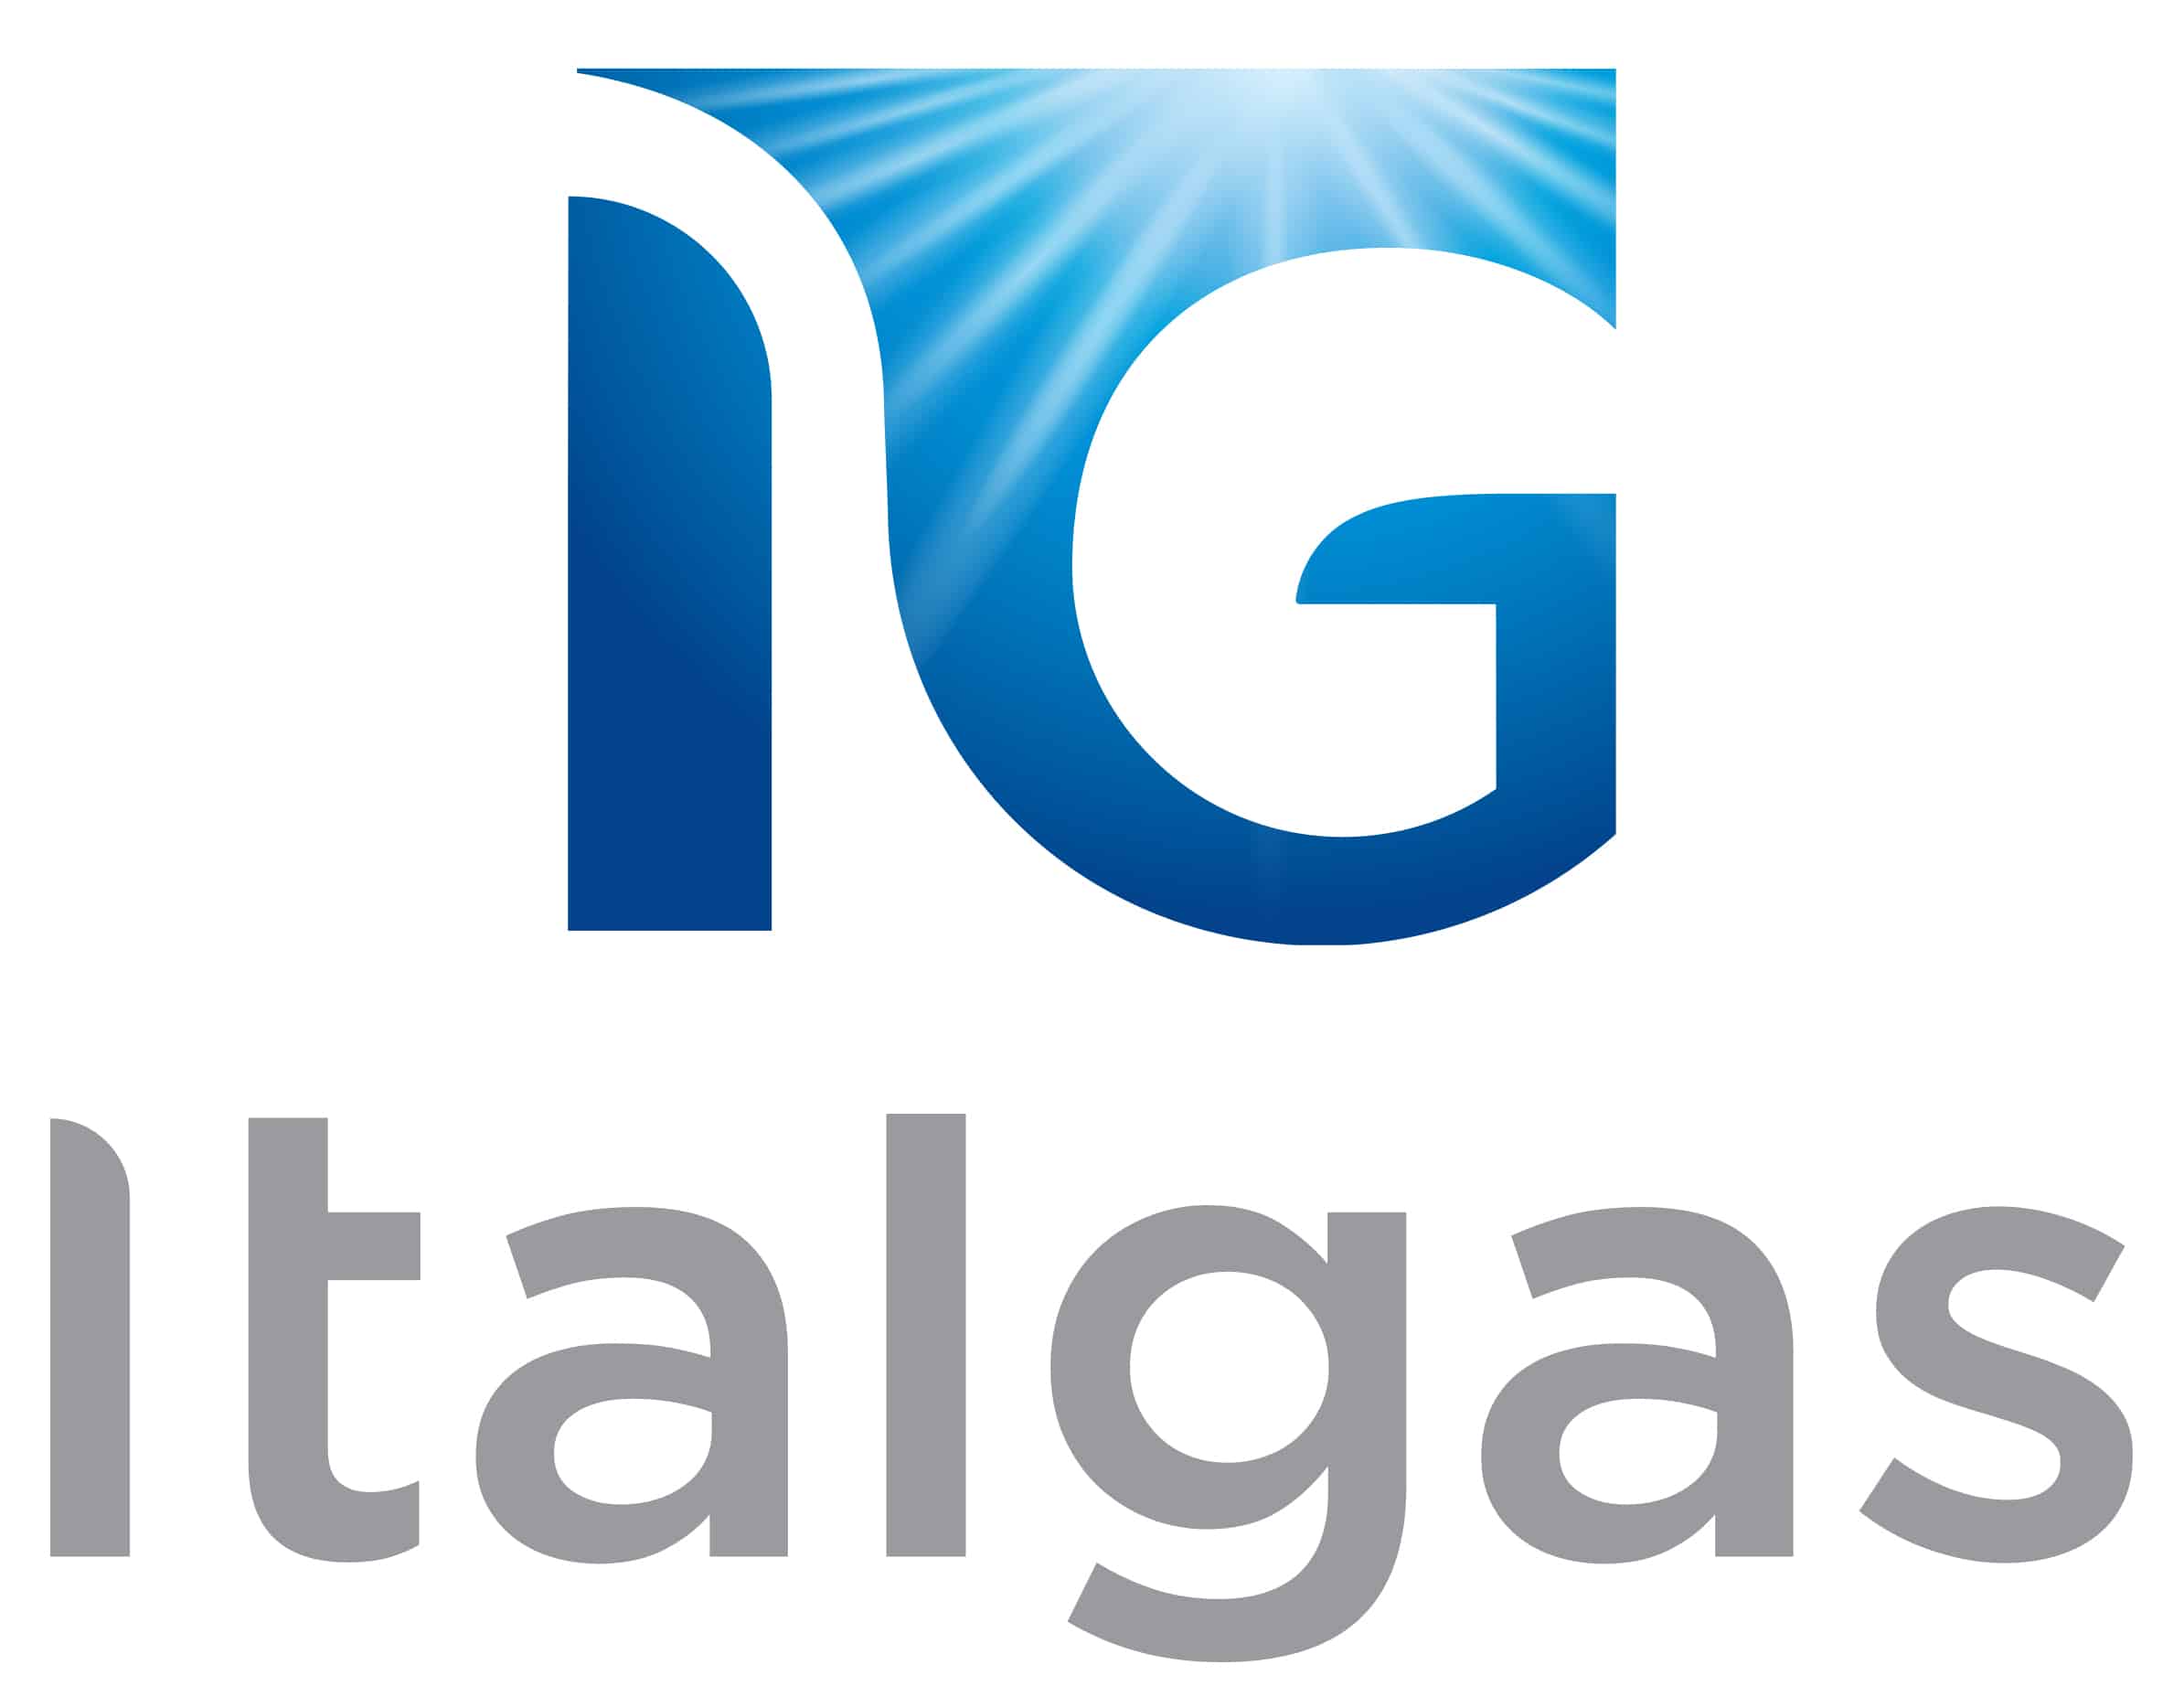 Italgas logo